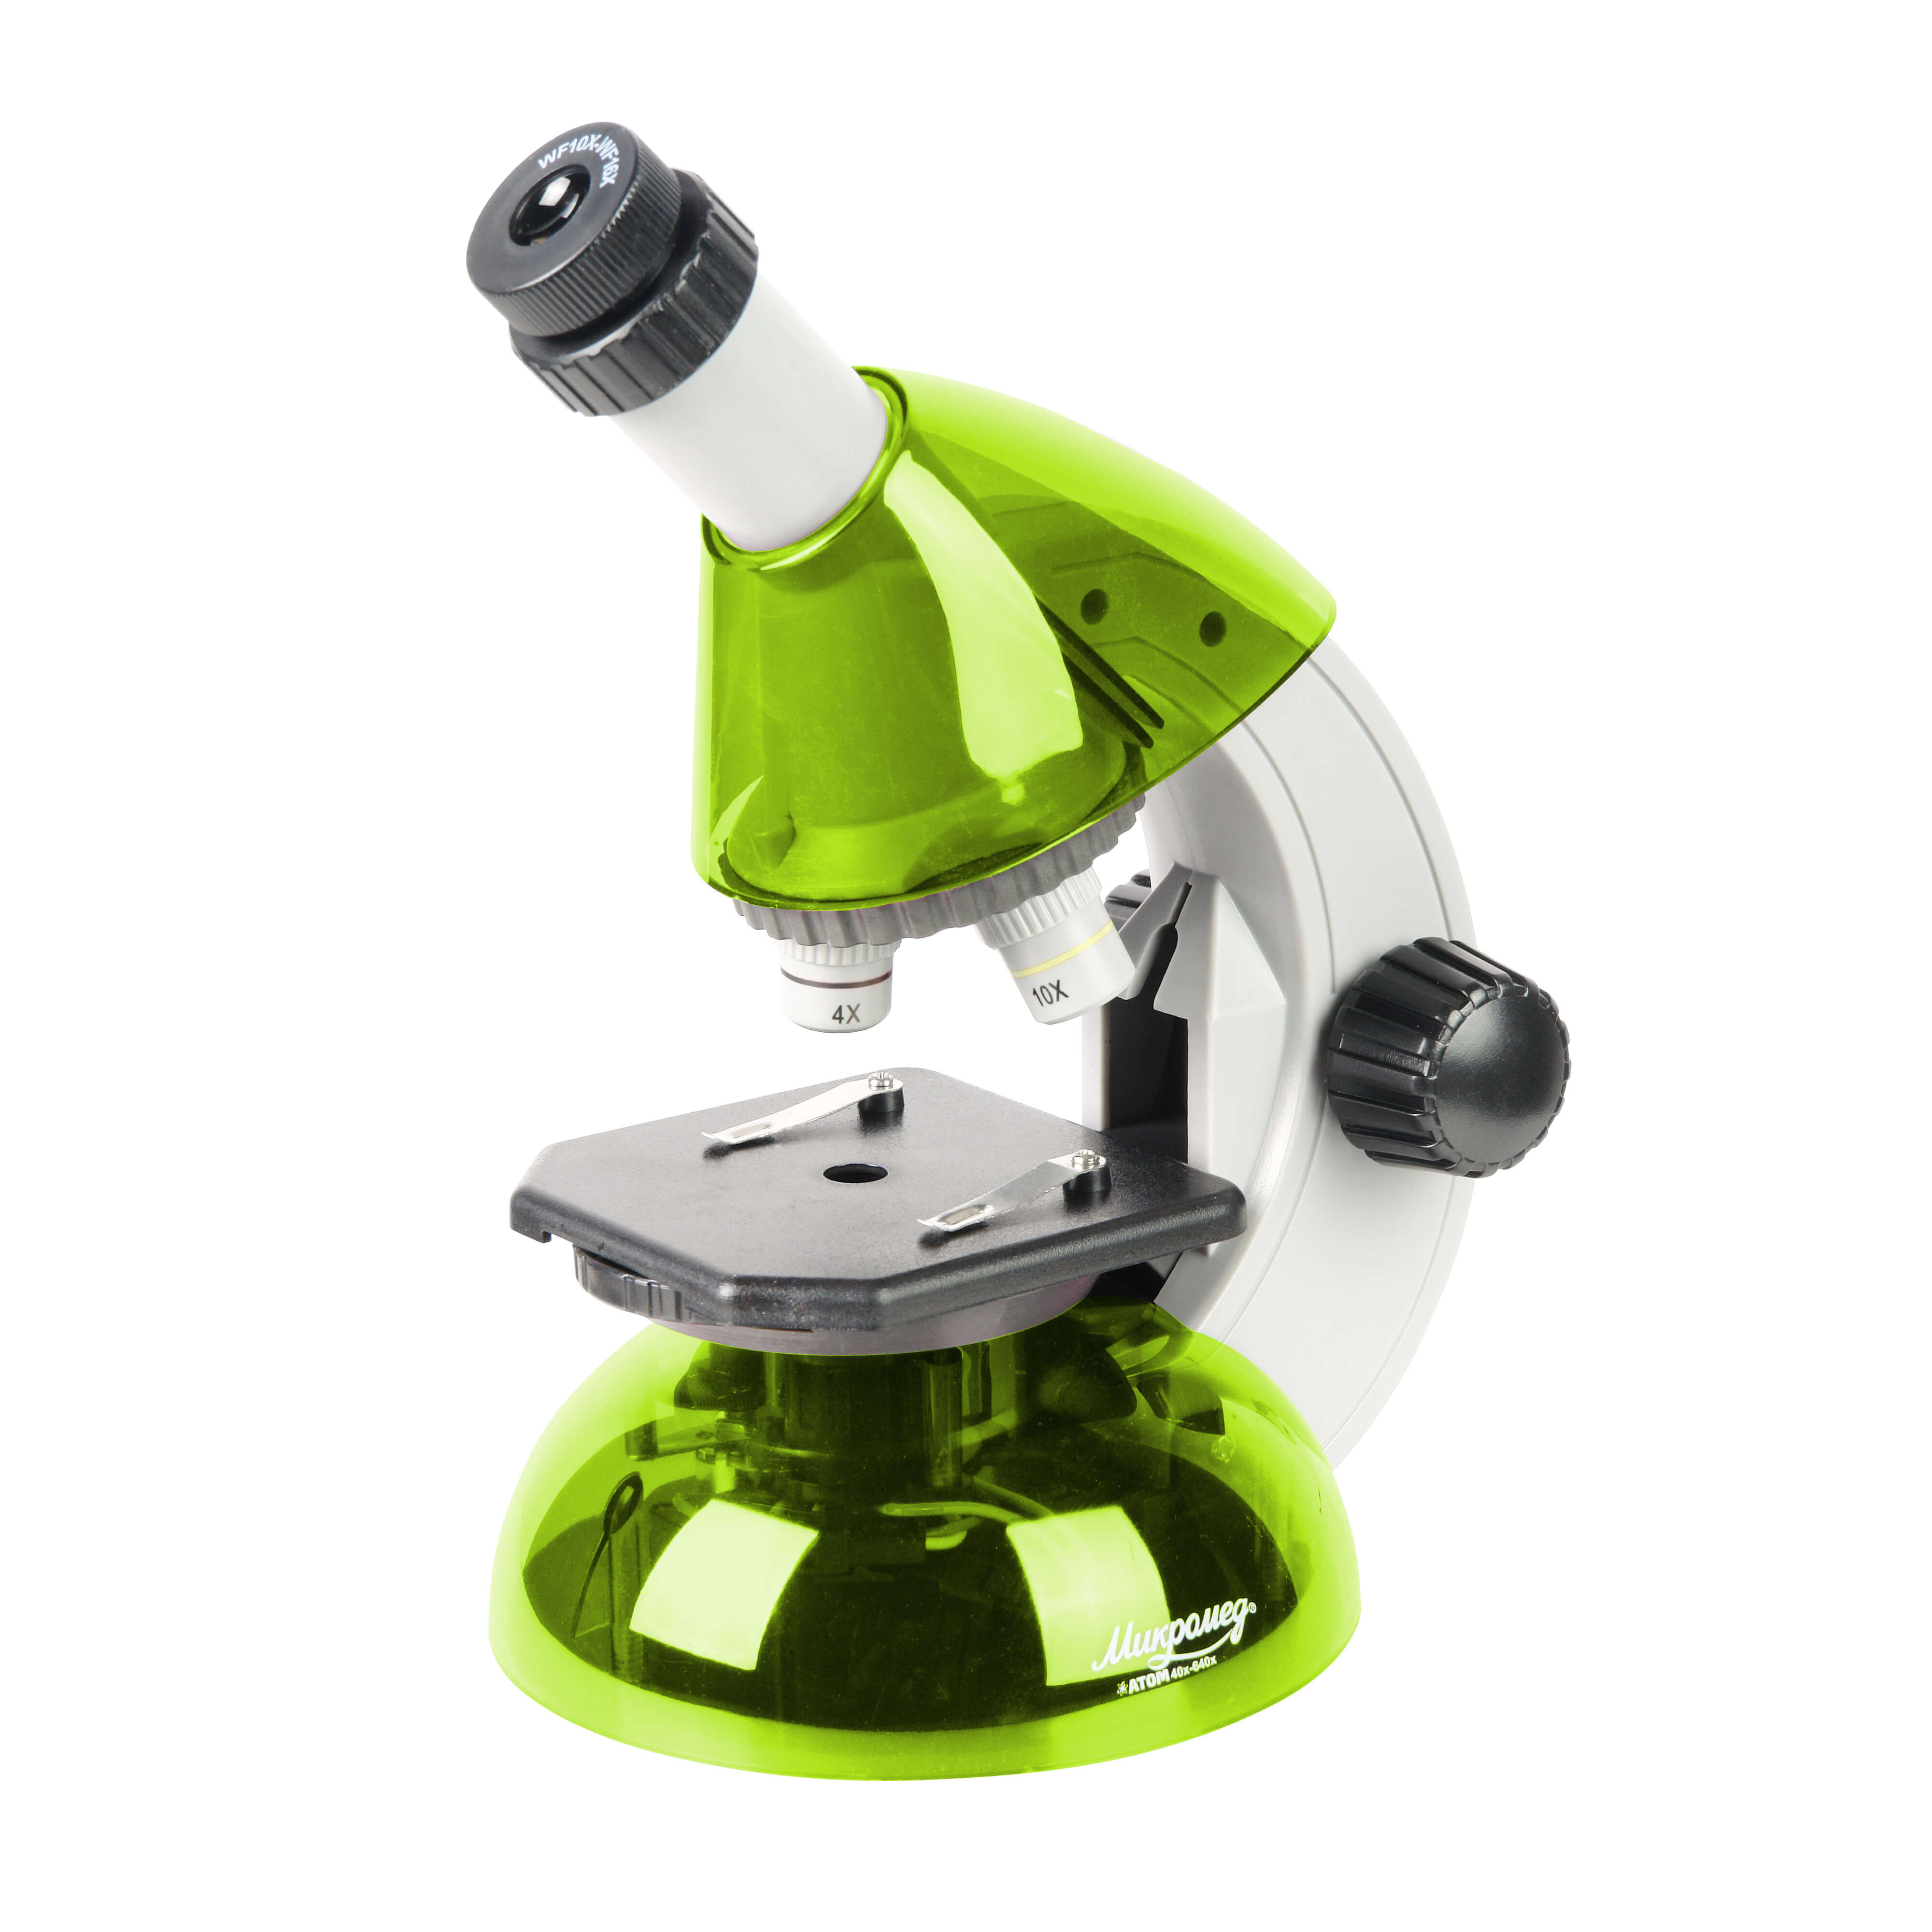 Микроскоп Микромед Атом 40x-640x, портативный лайм оптическая головка микромед мс 4 zoom тринокуляр с фокус механизмом на штатив 25477